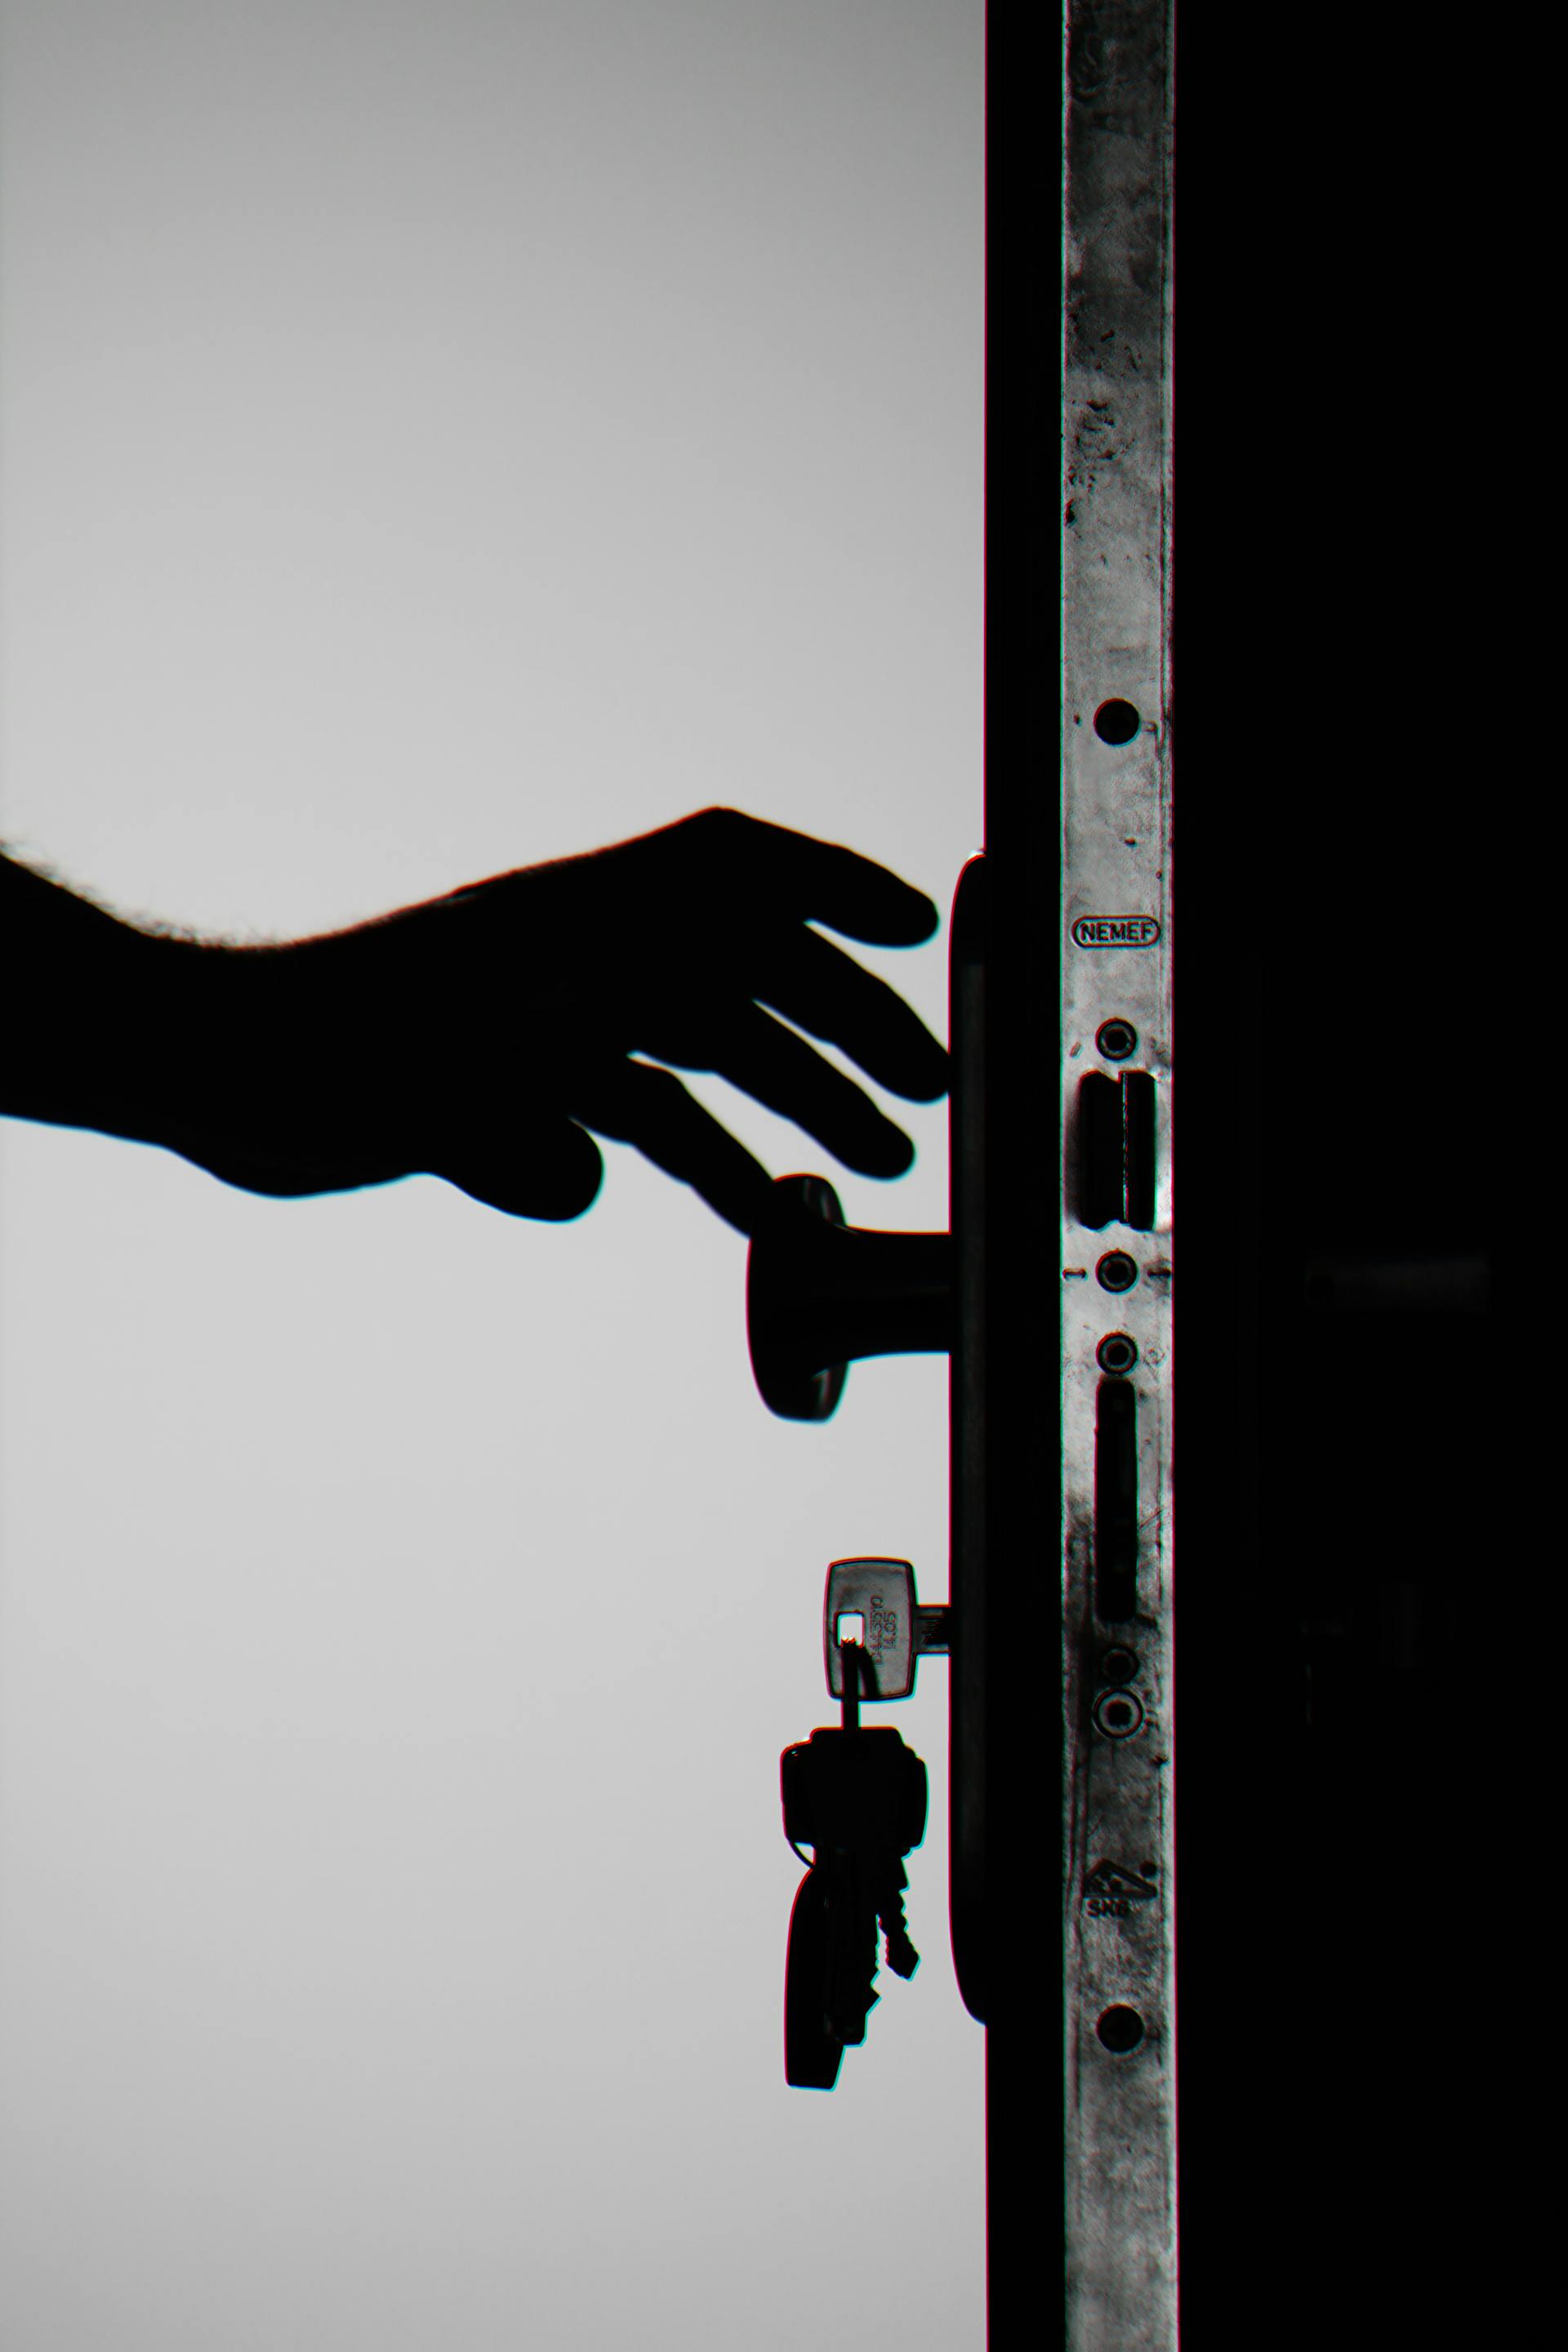 Una persona alcanzando la puerta | Fuente: Pexels